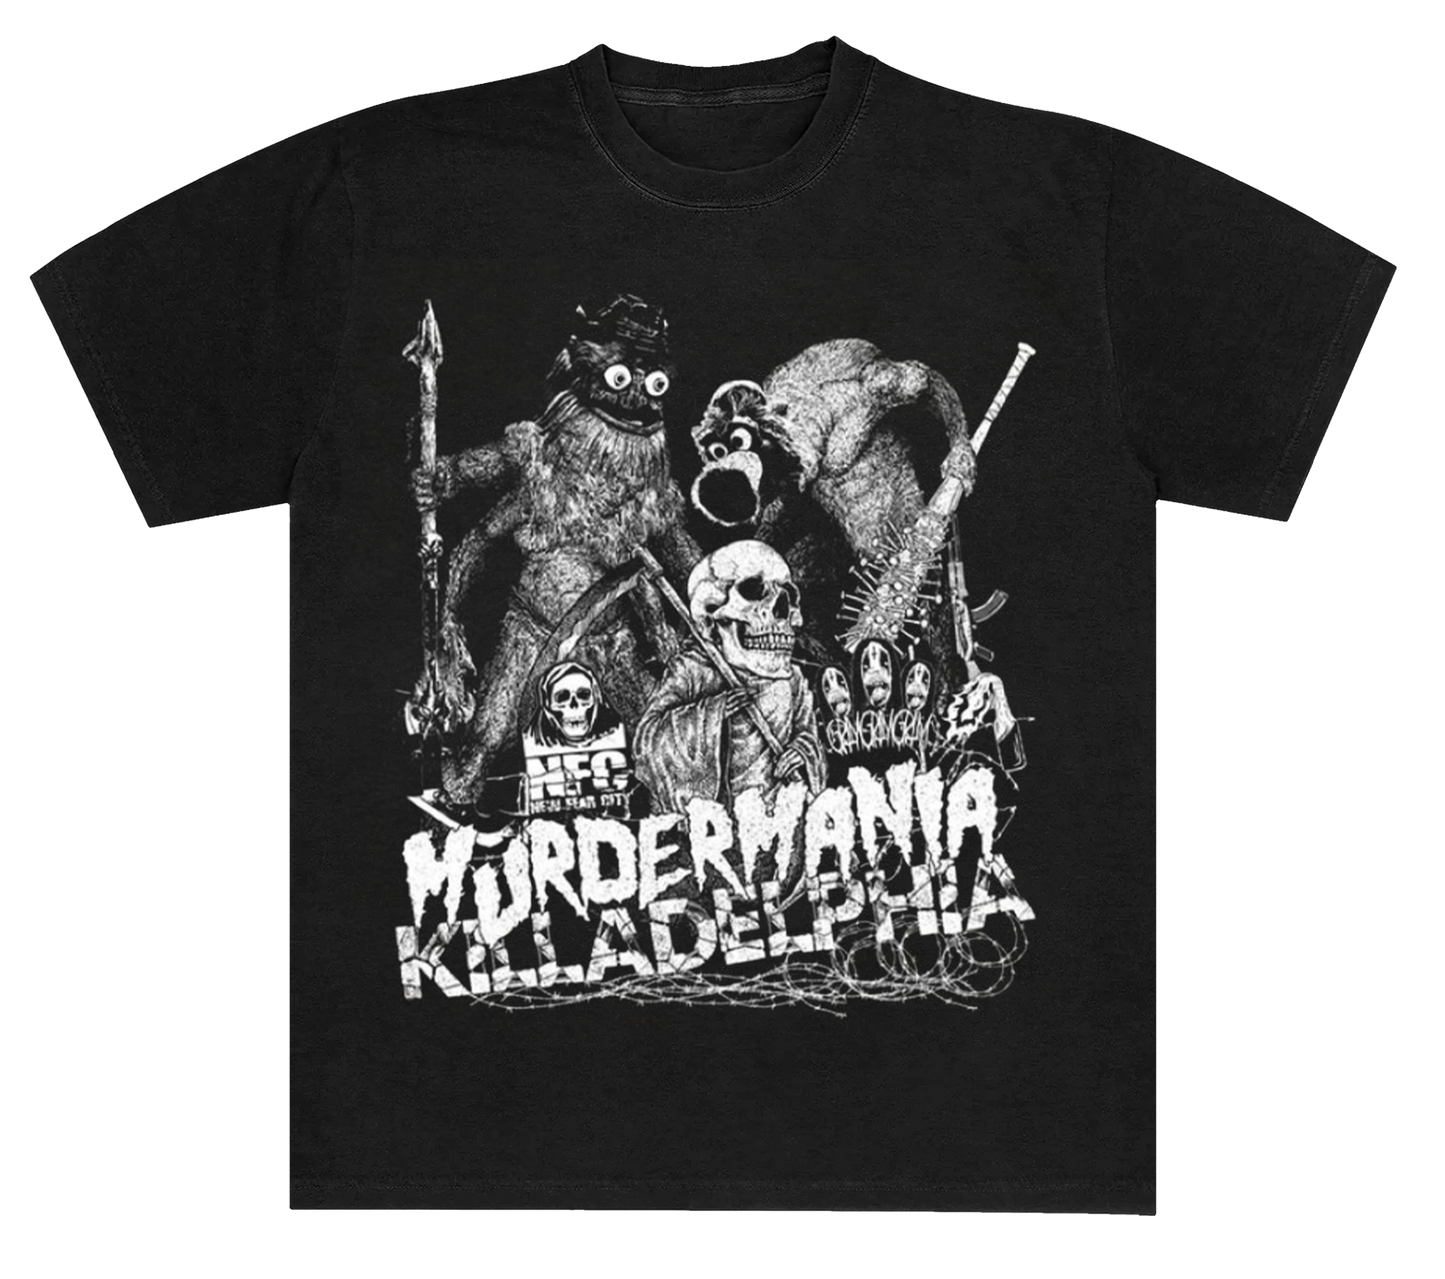 New Fear City Murder Mania T-Shirt